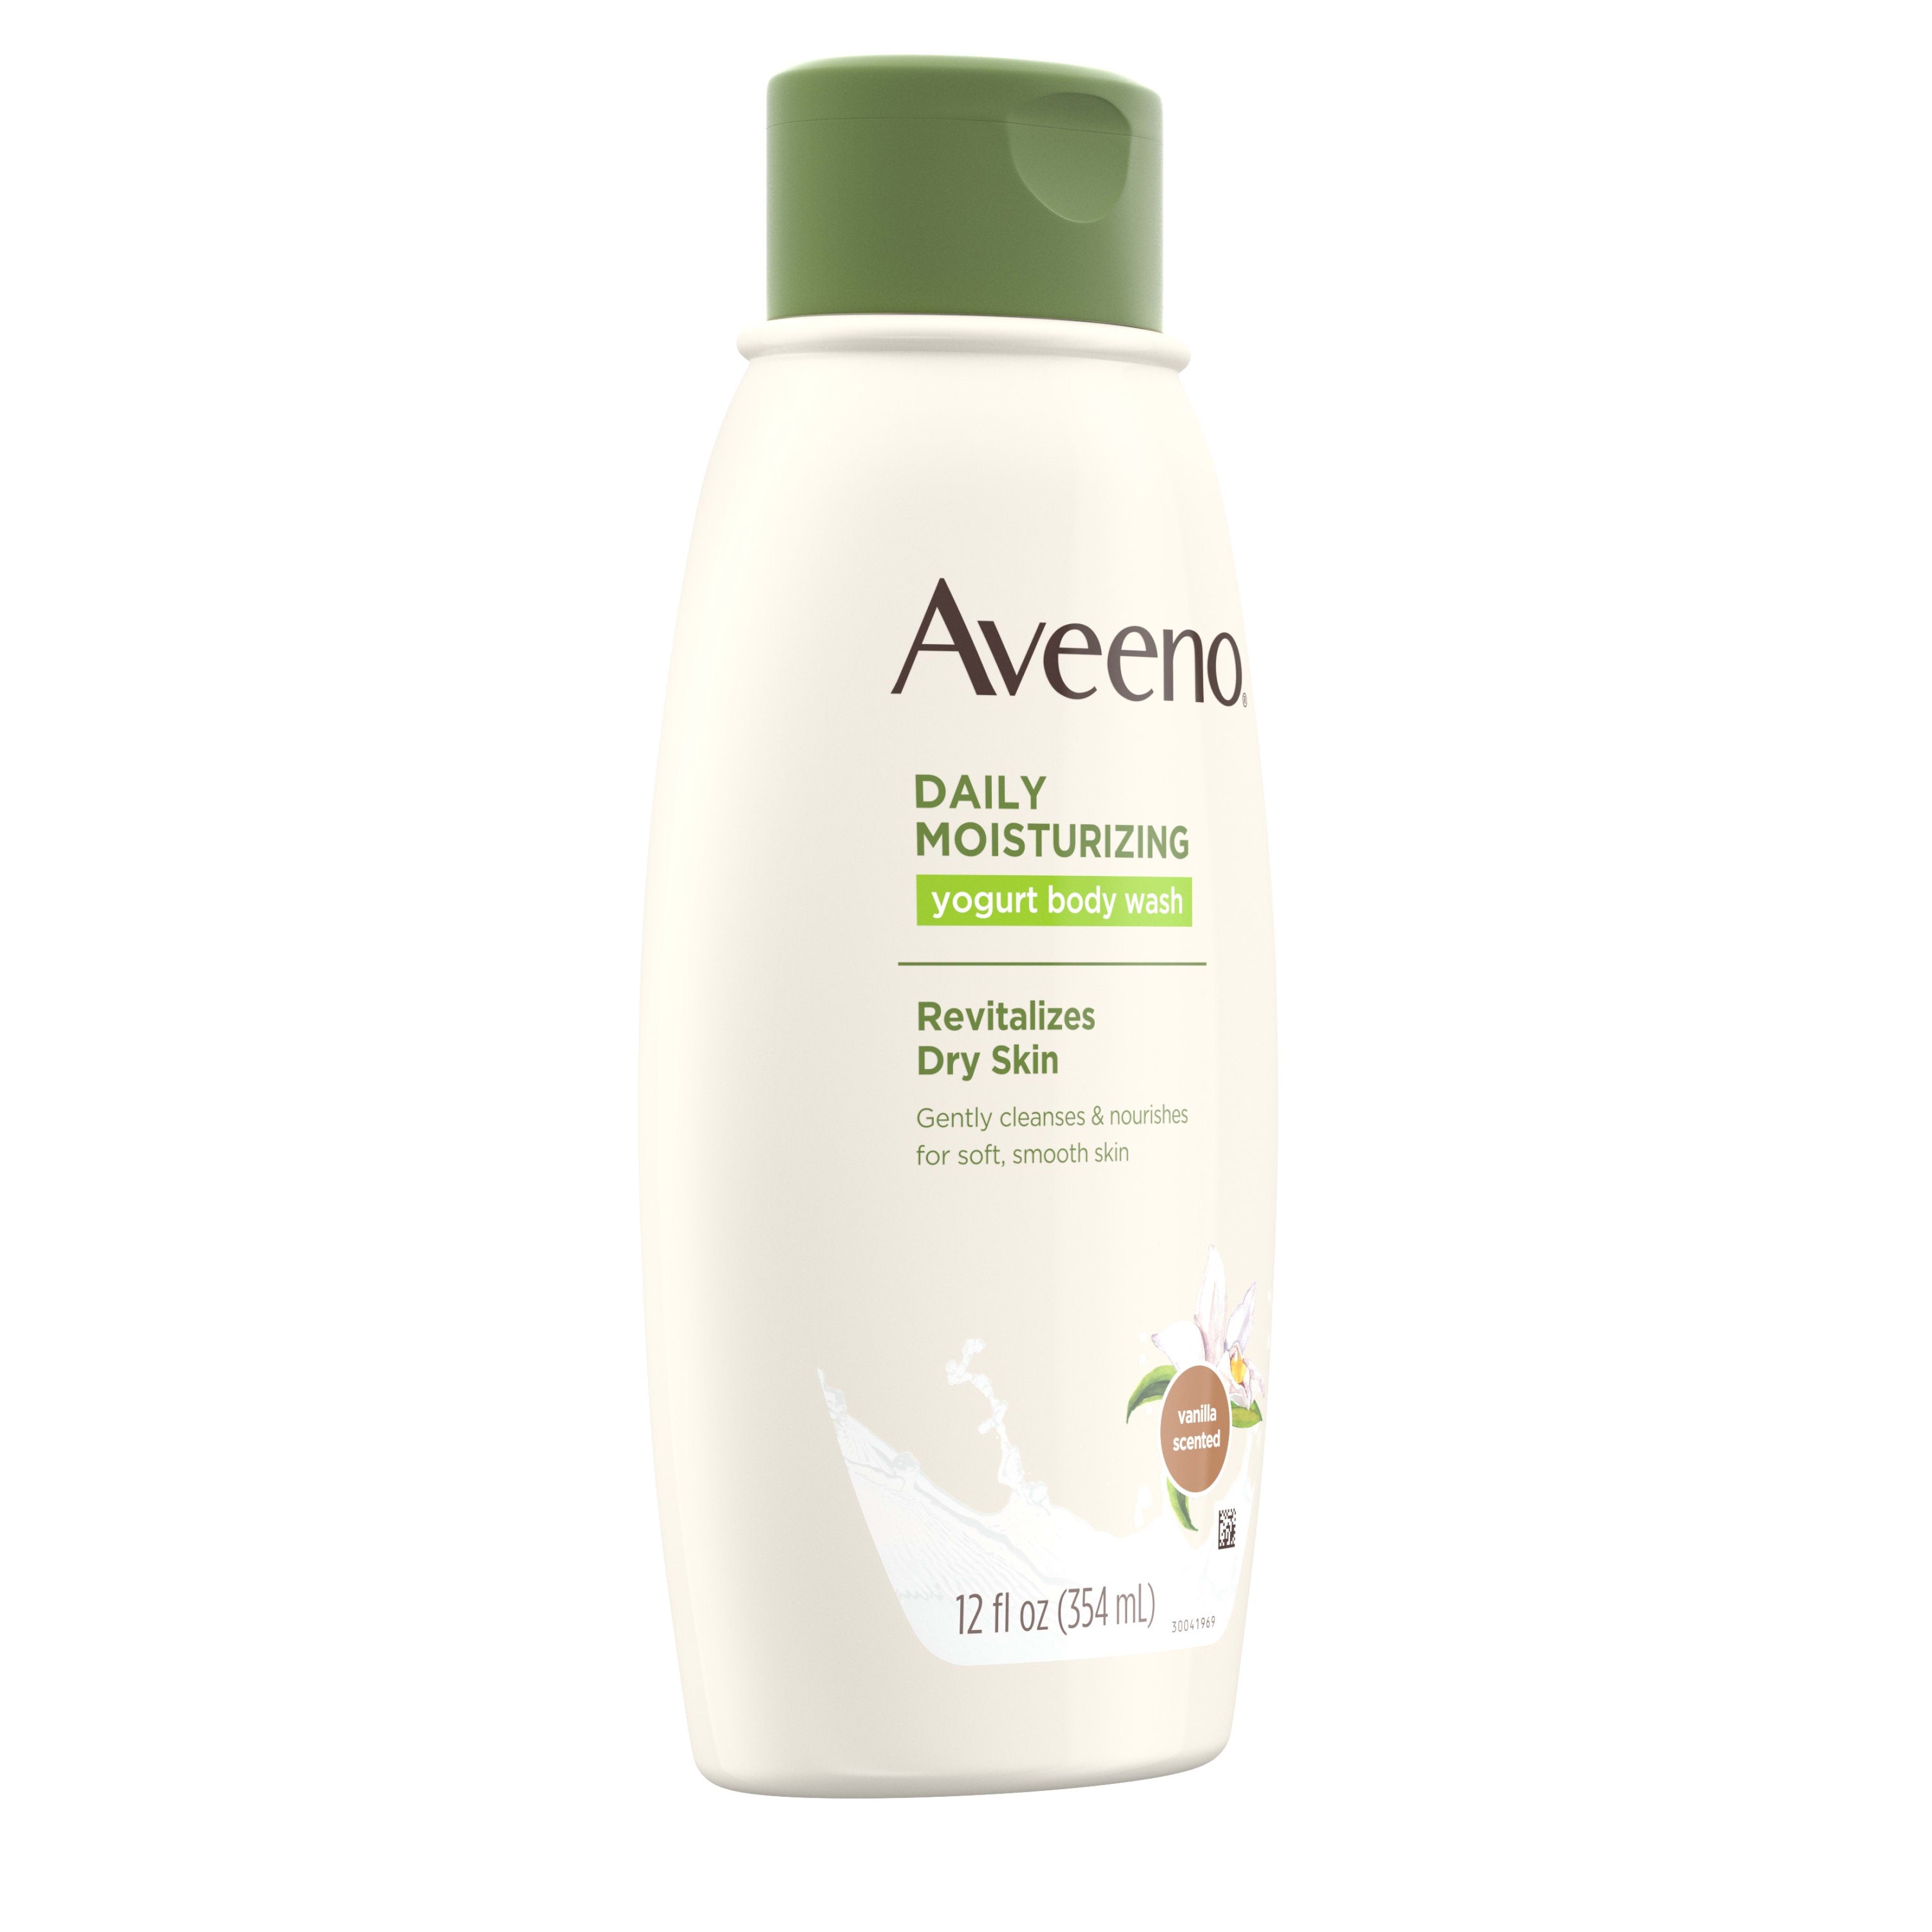 Aveeno Daily Moisturizing Yogurt Body Wash for Dry Skin, 12 fl. oz | MTTS363